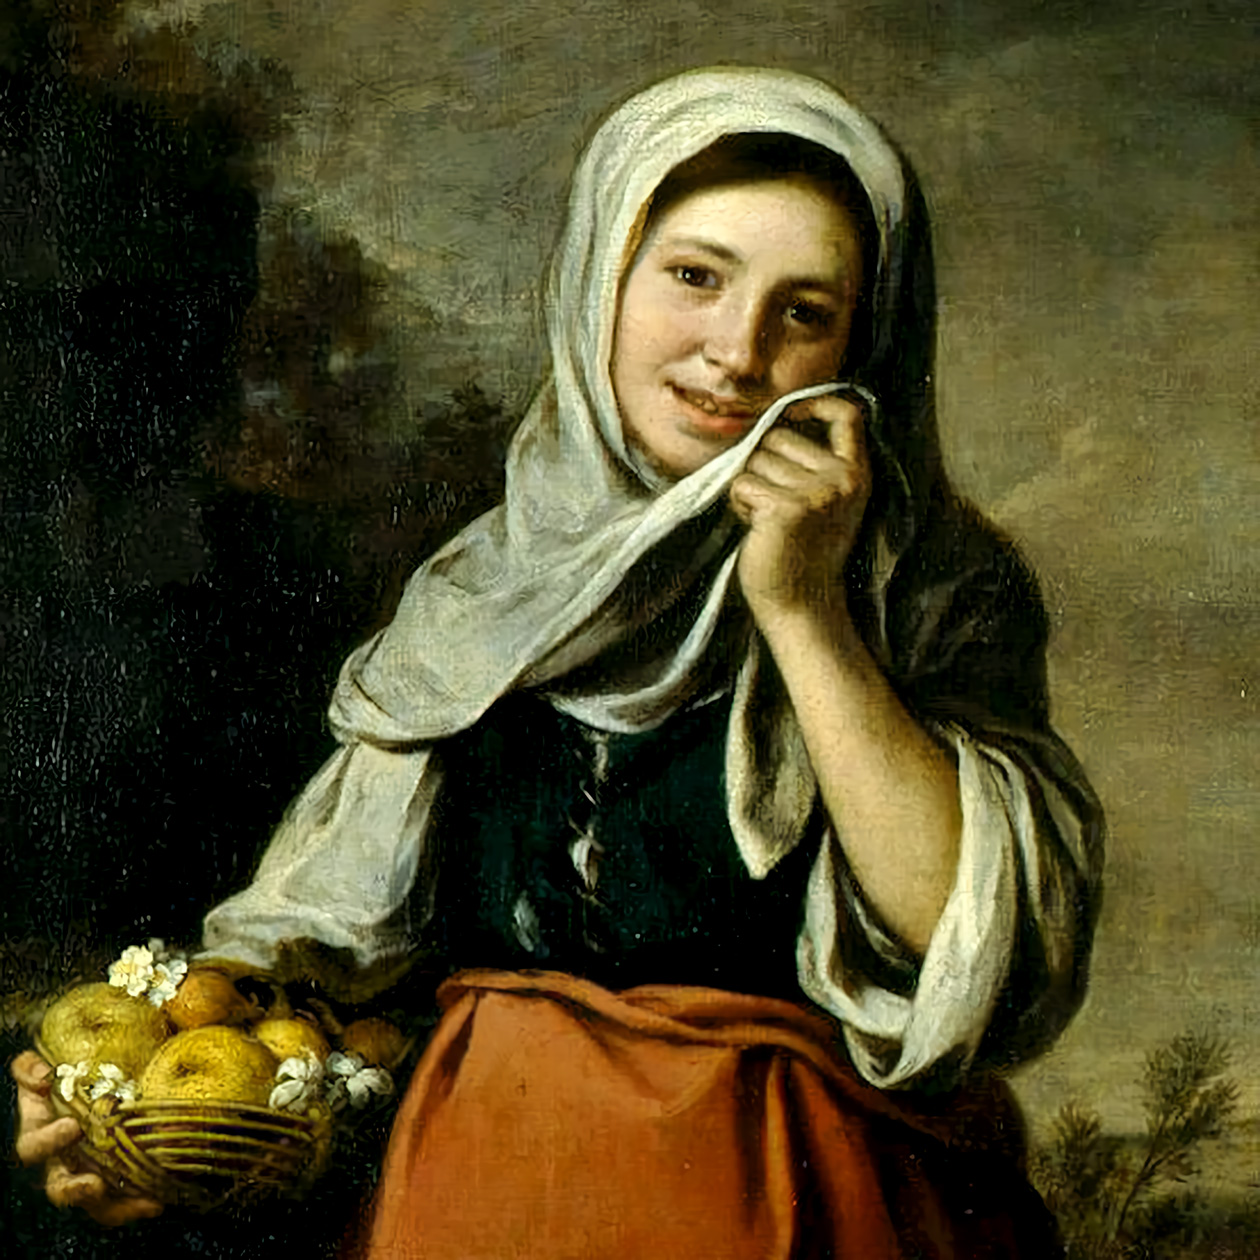 Картина: Бартоломе Эстебан Мурильо. Девочка-продавщица фруктов. 1650-1659 гг.